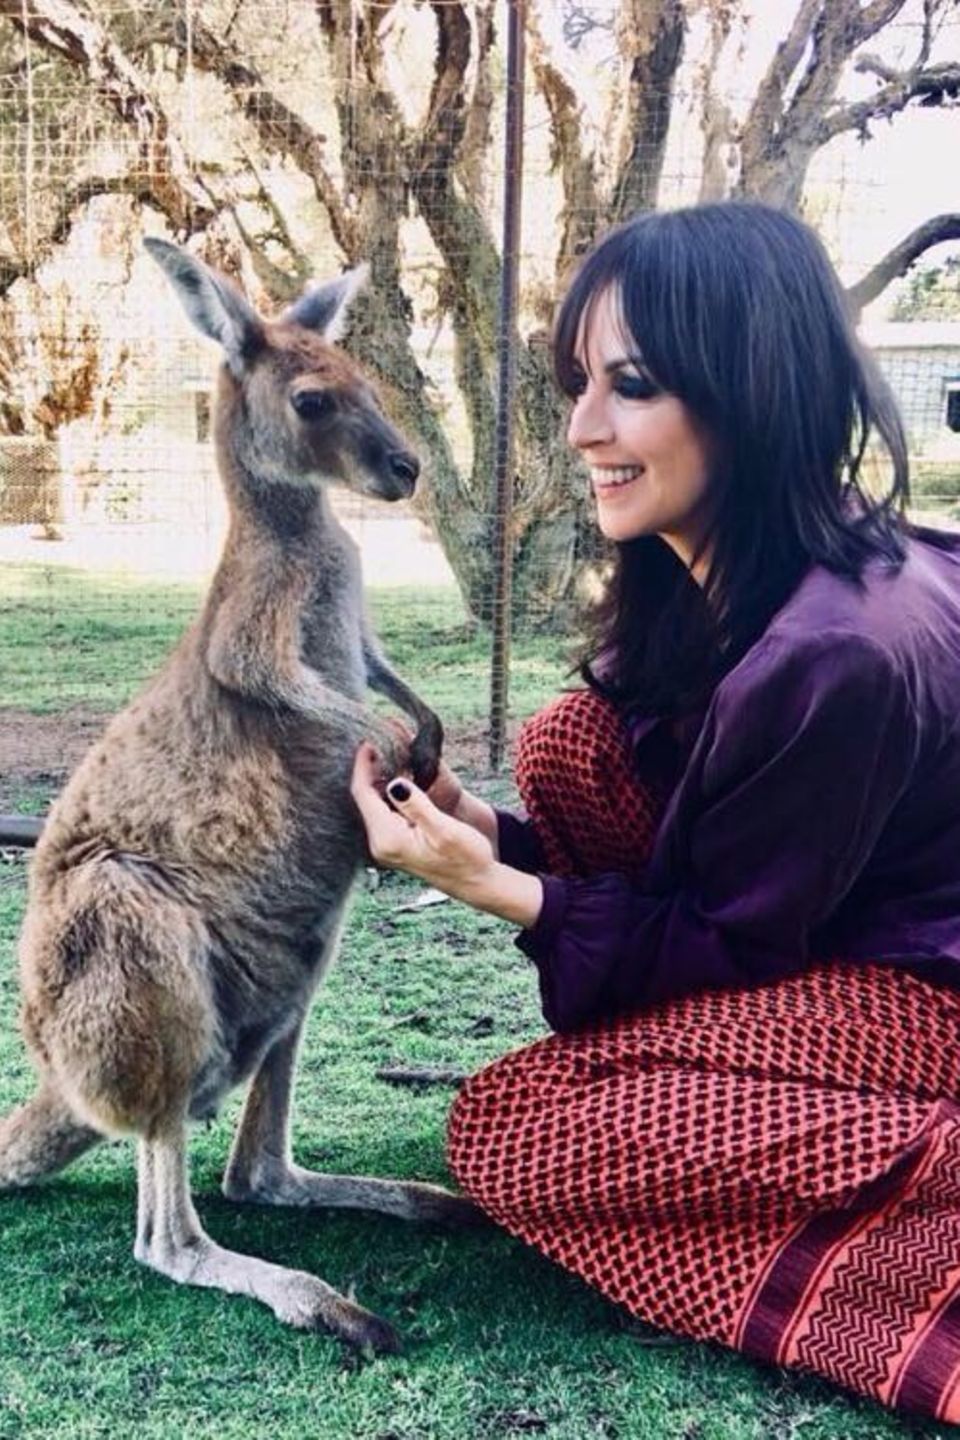 Sängerin Nena hat es sich nicht nehmen lassen während ihres Australientrips dieses kleine Sprungwunder kennenzulernen.